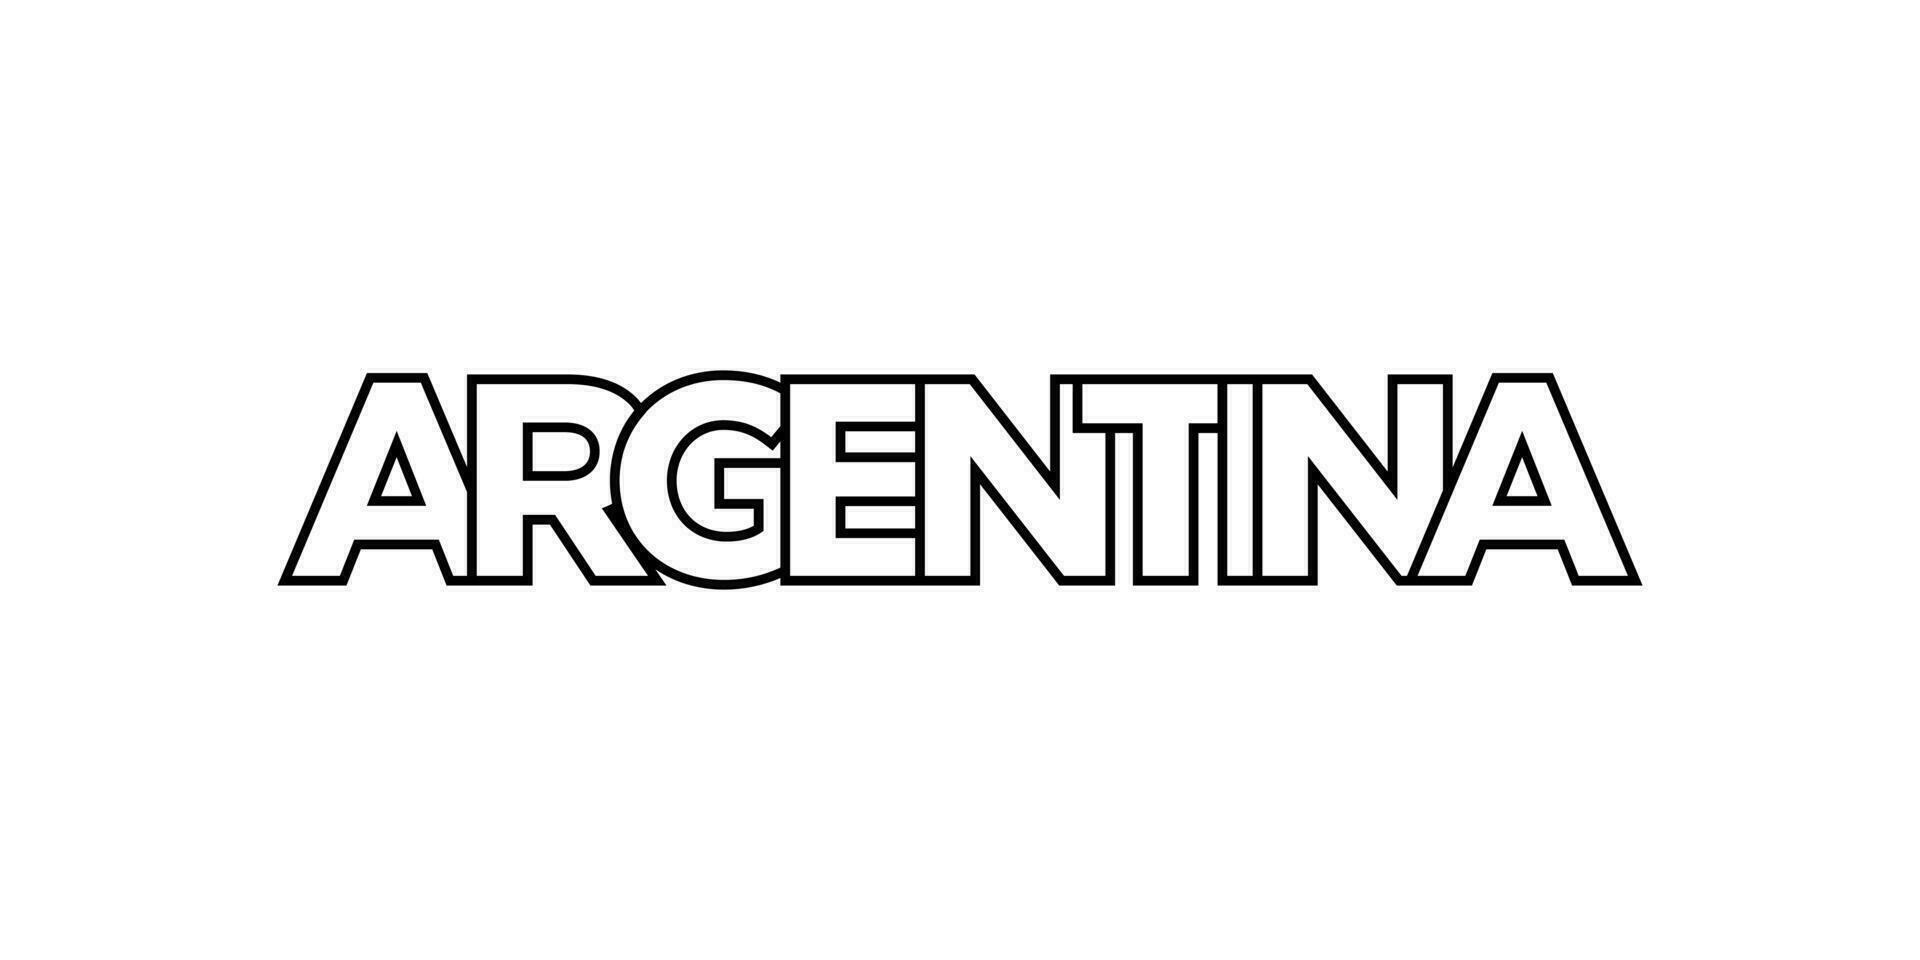 argentina emblem. de design funktioner en geometrisk stil, vektor illustration med djärv typografi i en modern font. de grafisk slogan text.